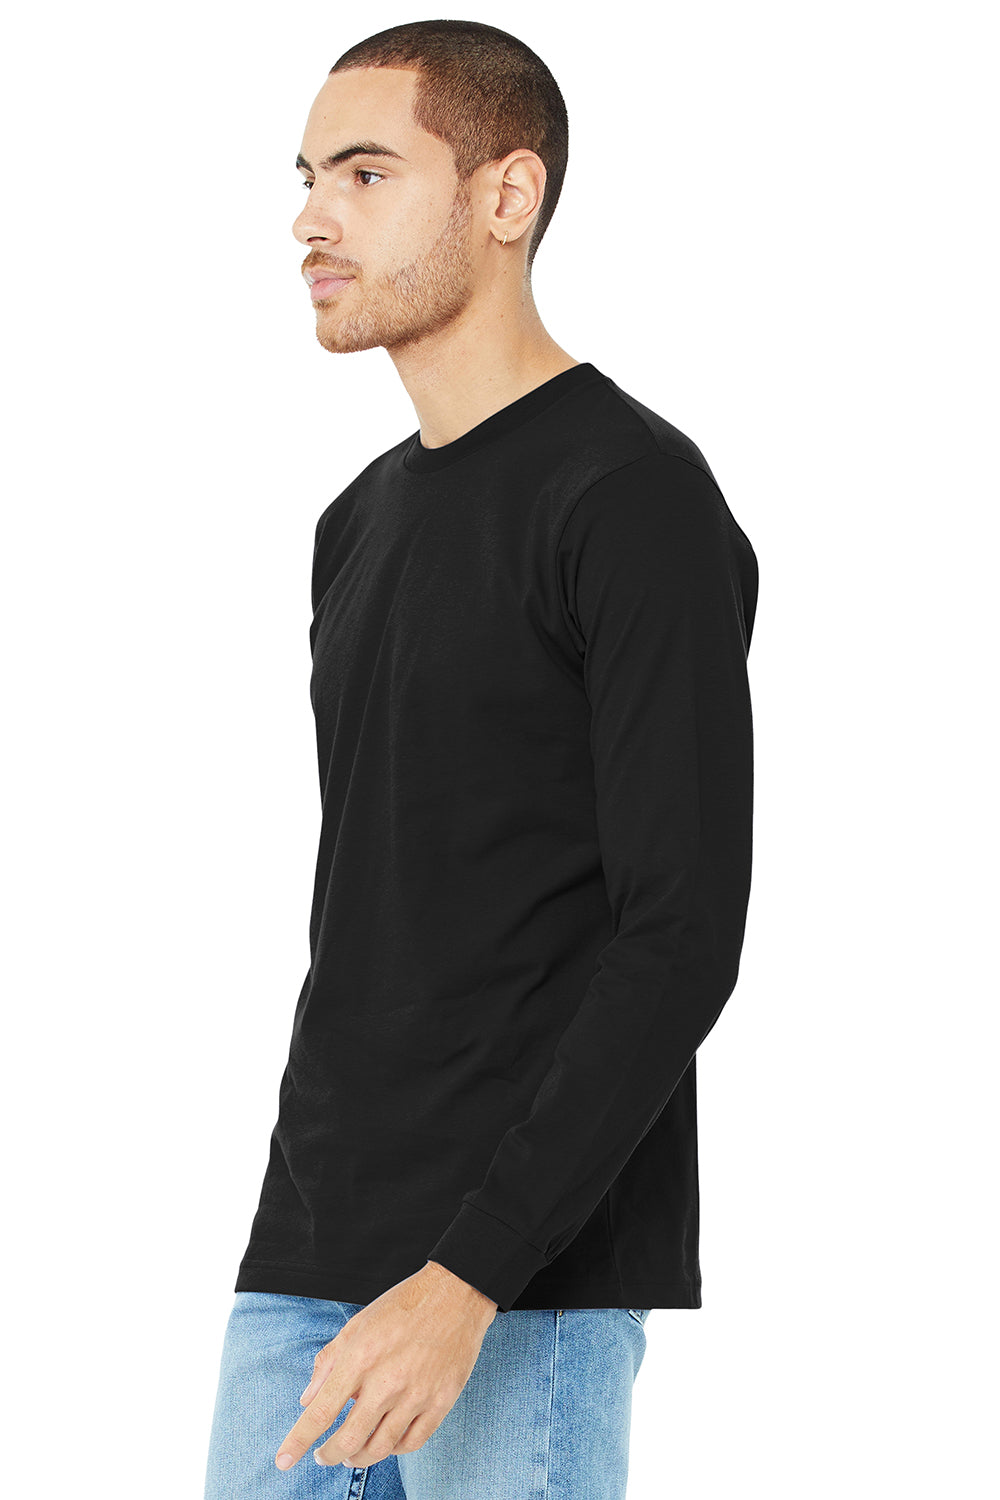 Bella + Canvas BC3501/3501 Mens Jersey Long Sleeve Crewneck T-Shirt Black Model 3Q